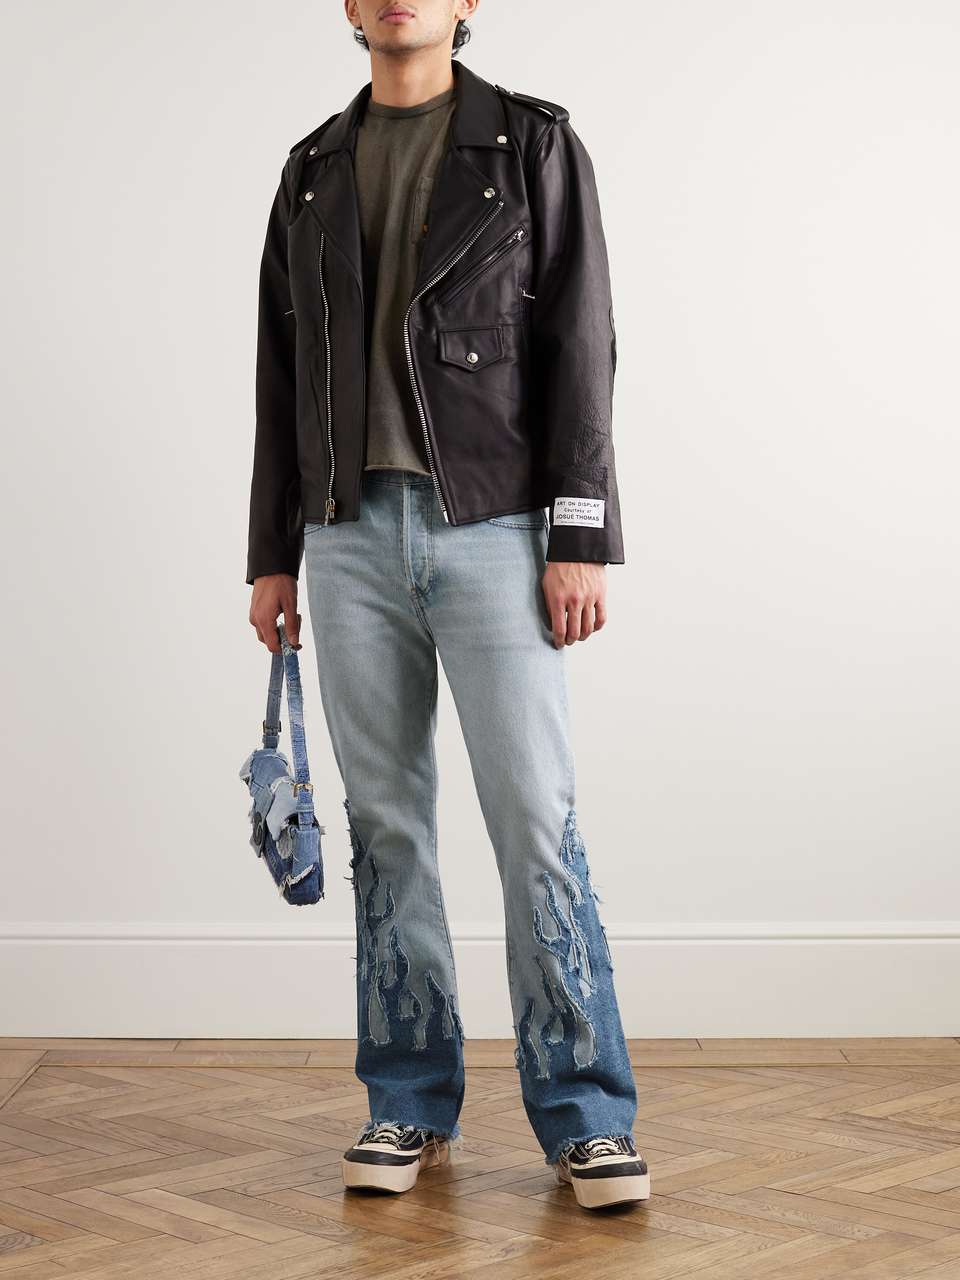 GALLERY DEPT. LA Blvd Flared Appliquéd Distressed Jeans for Men | MR PORTER